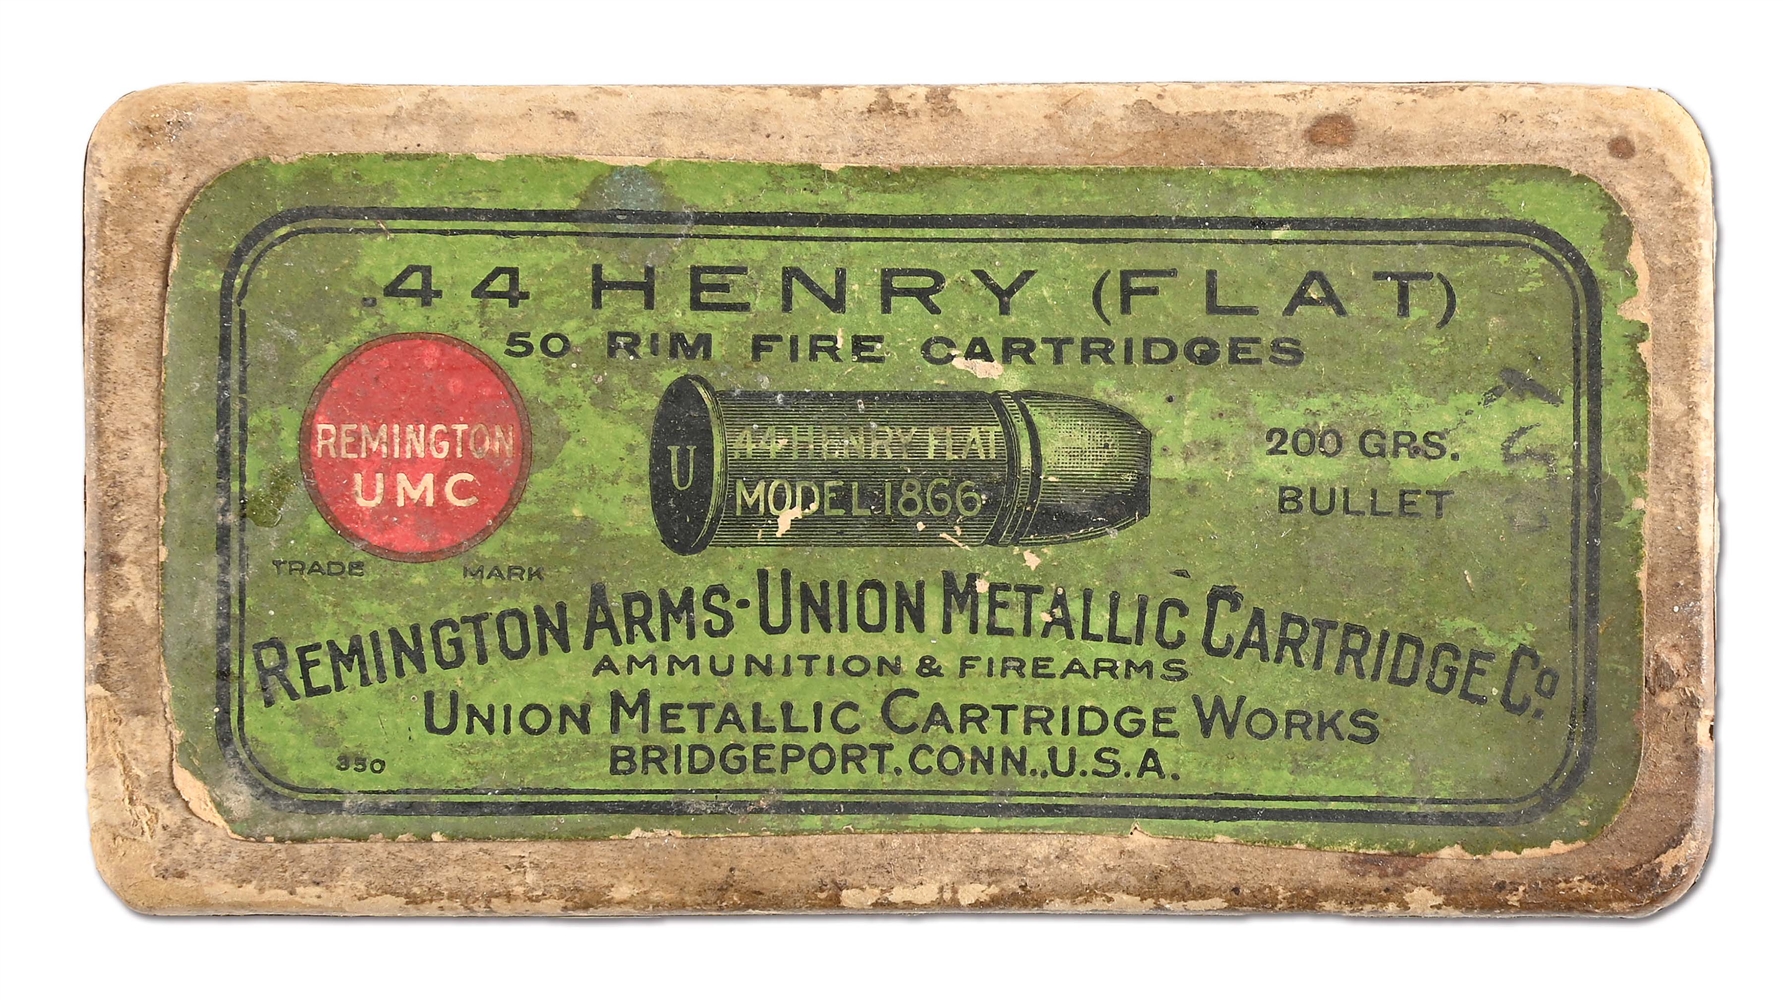 FULL BOX OF REMINGTON UMC .44 HENRY FLAT AMMUNITION.